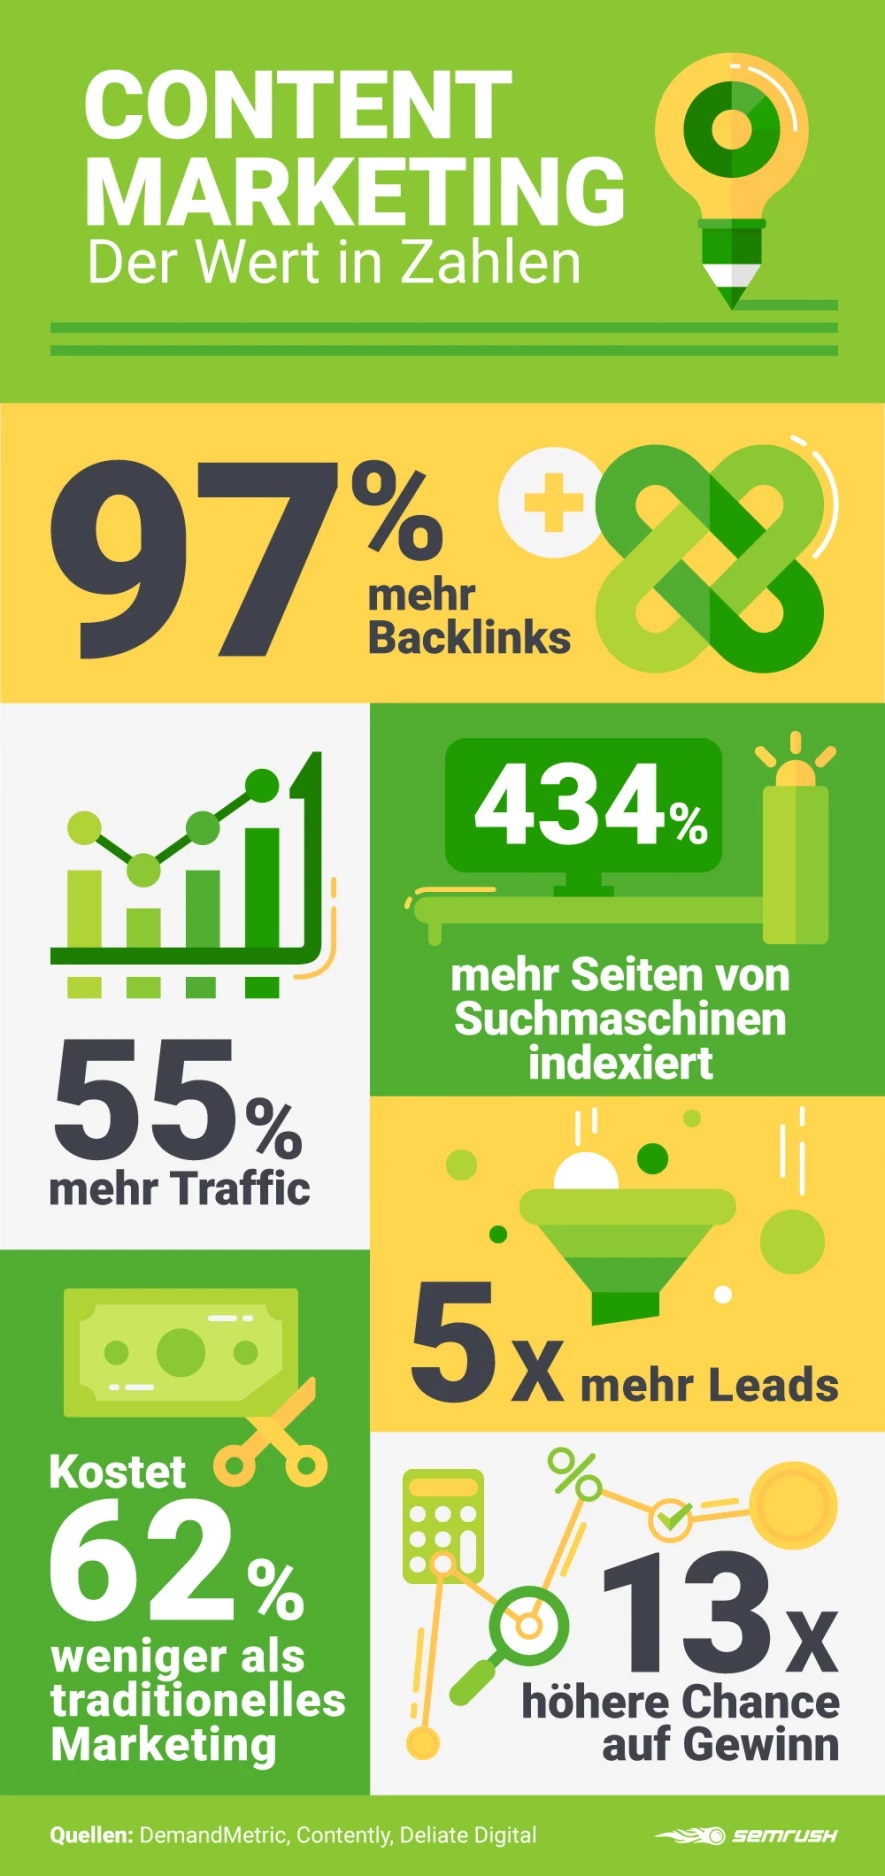 Vorteile Content Marketing Zahlen (Bild: Semrush)